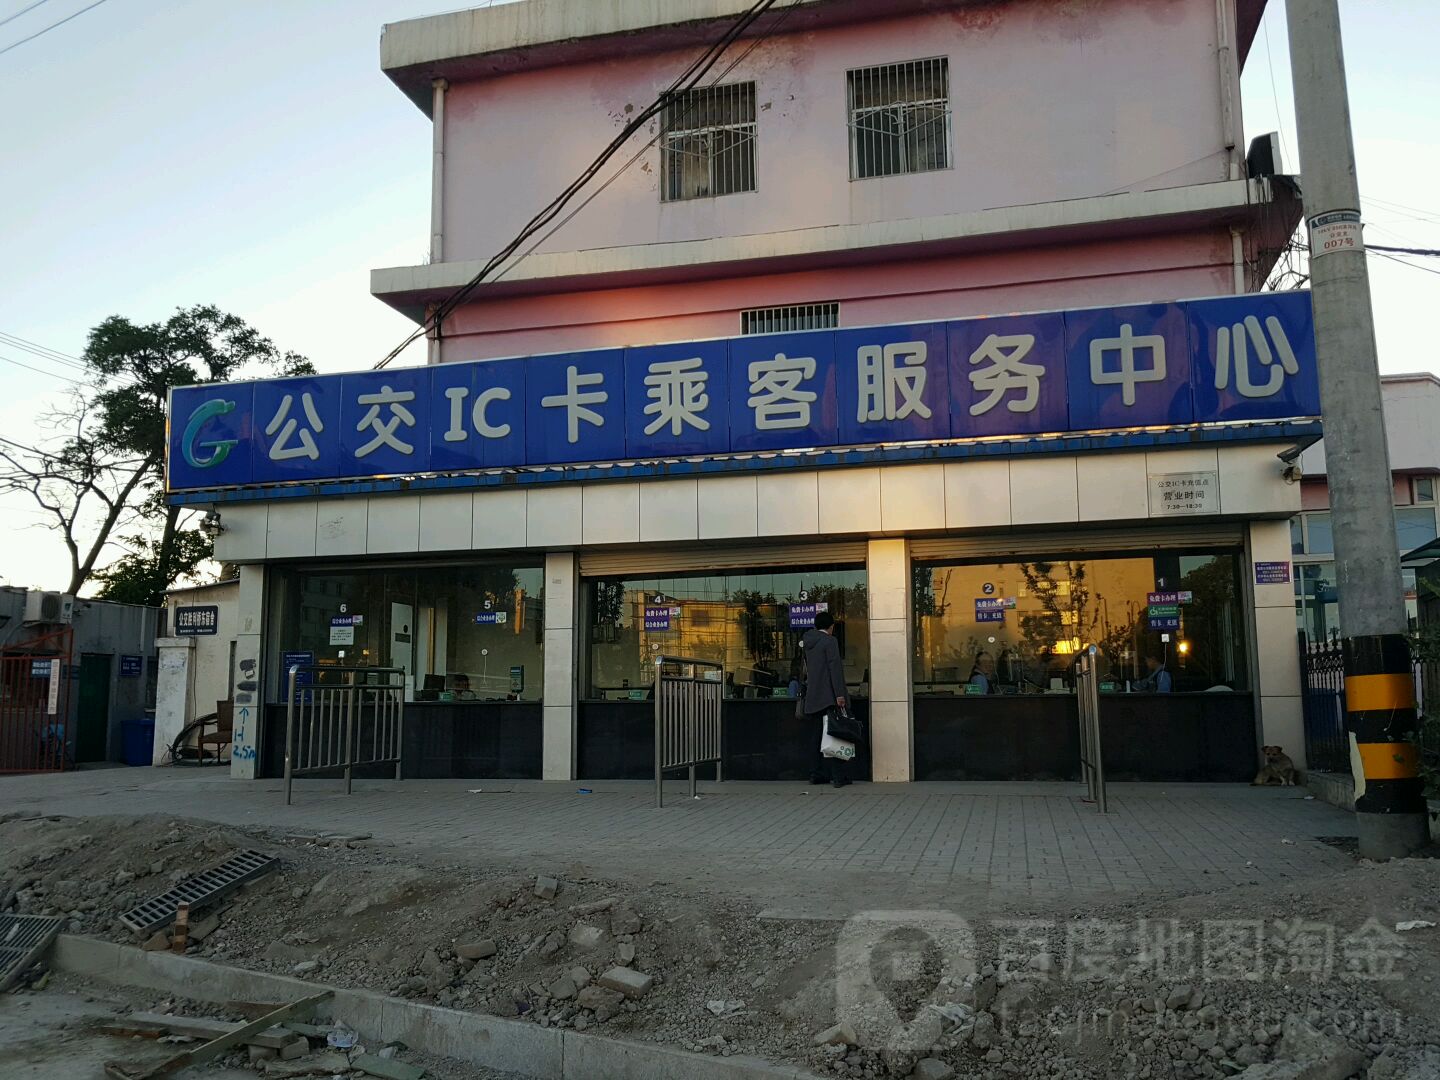 公交IC卡乘客户务中心